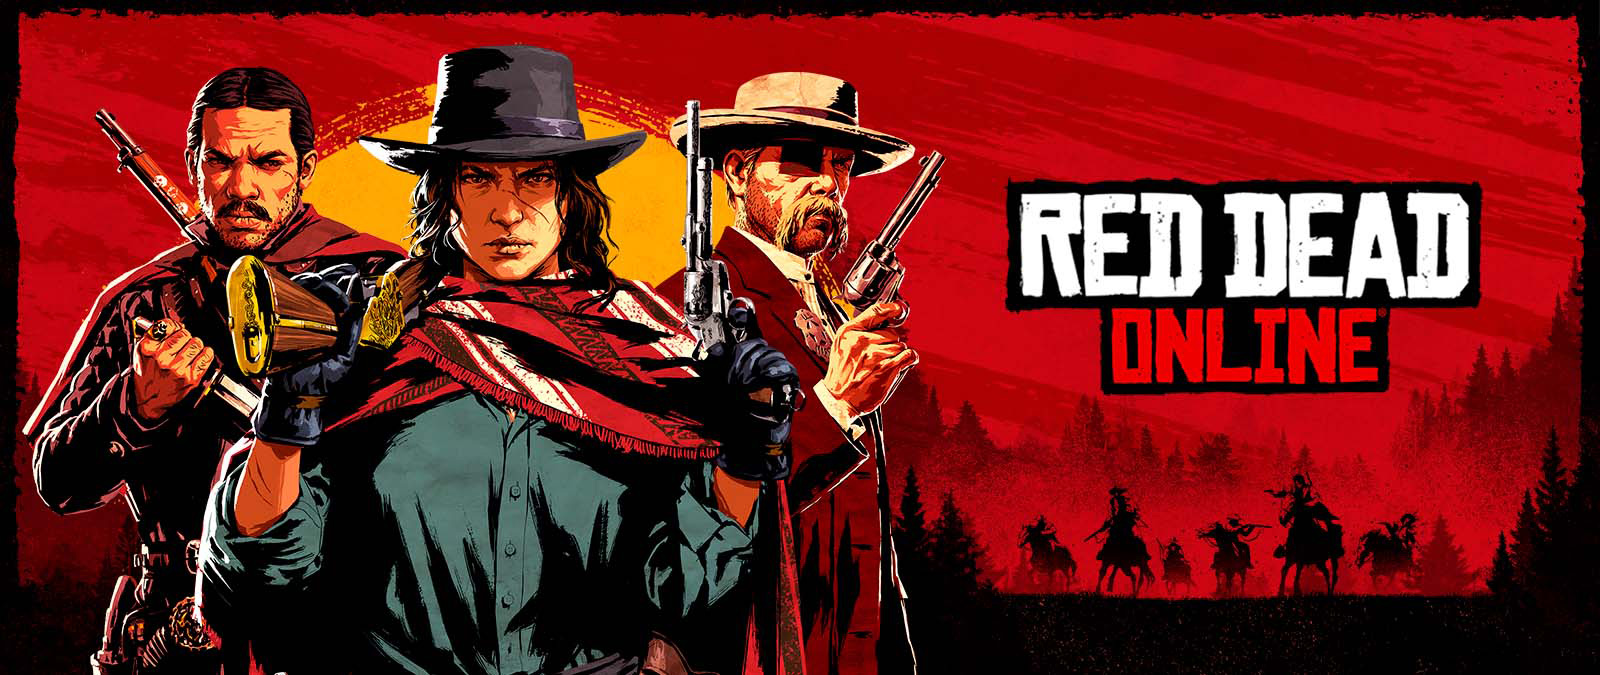 Red Dead Online. Gün batımının önünde ellerinde silahlar olan üç karakter ve at üstündeki diğer karakterlerin gölgeleri.